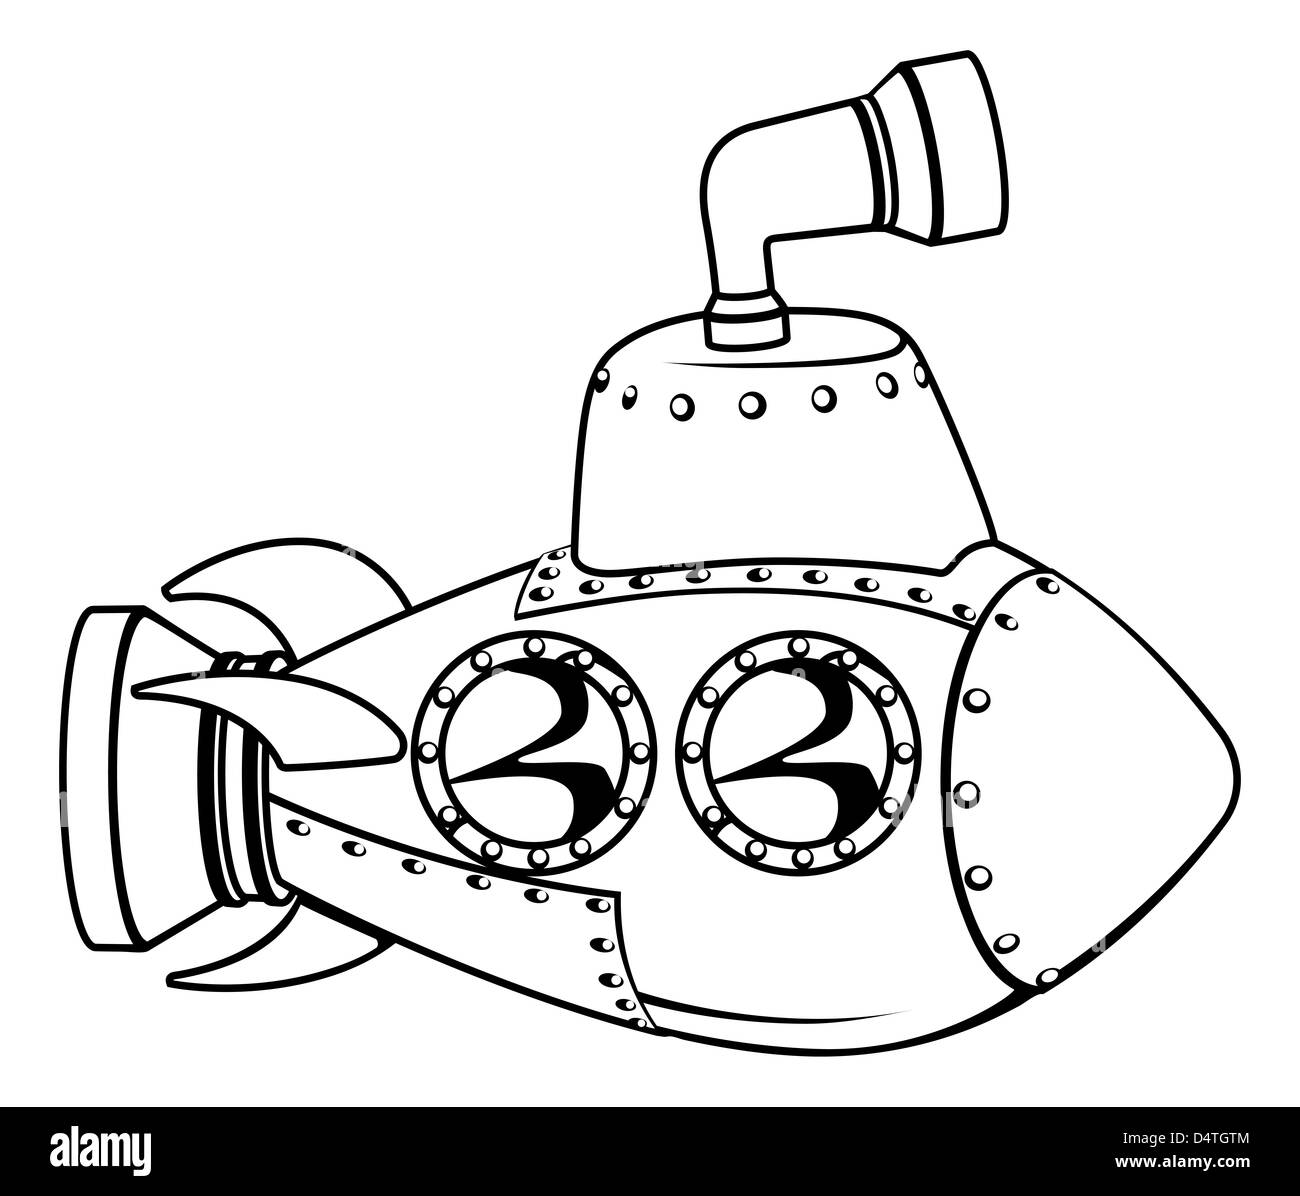 Ilustración de una caricatura submarino esquema en blanco y negro Foto de stock